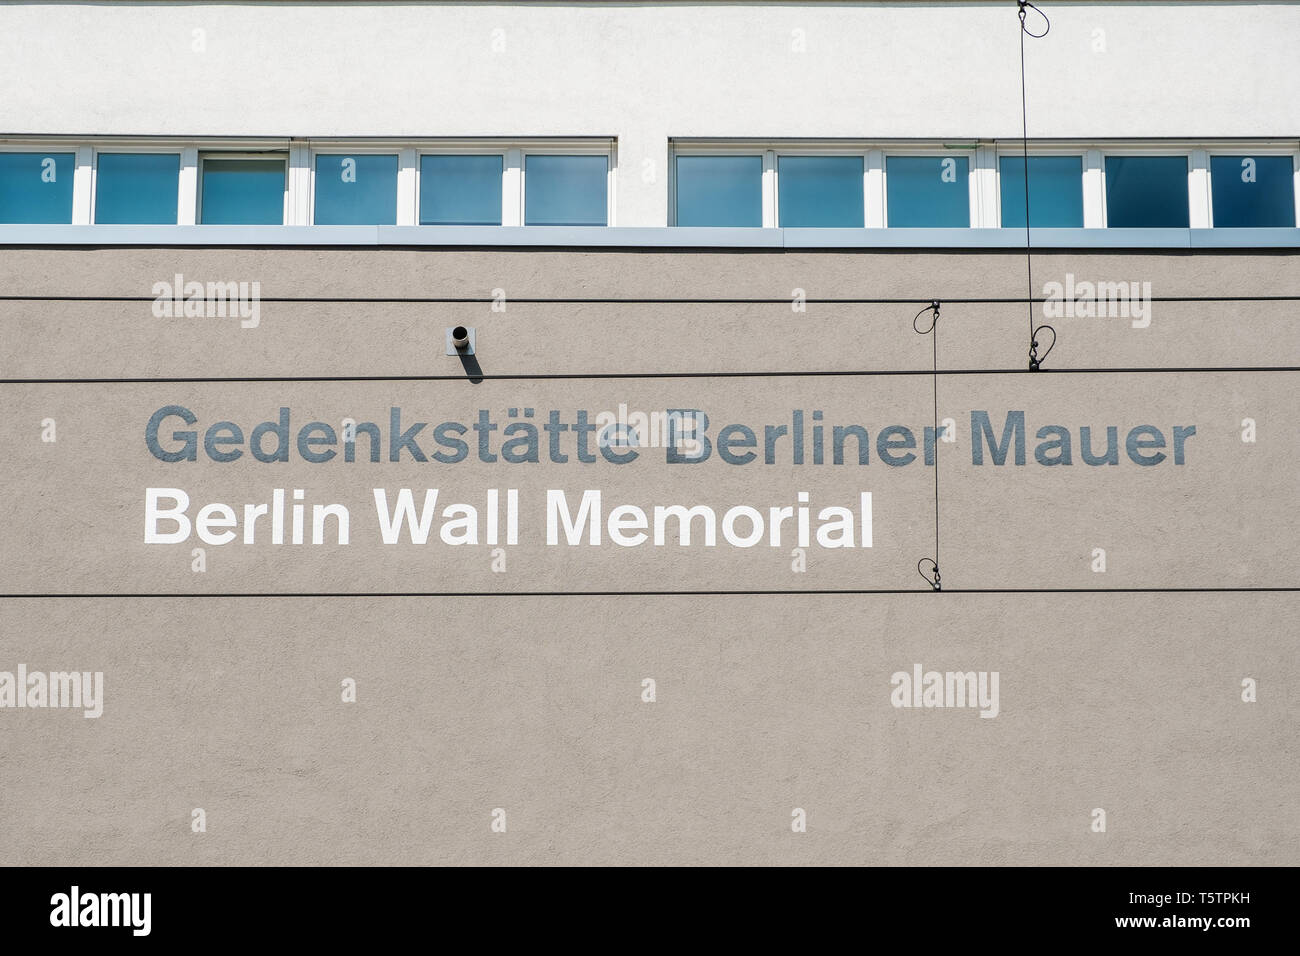 Berlin, Deutschland - April 2019: Gedenkstaette Berliner Mauer (die Gedenkstätte Berliner Mauer), Berlin, Deutschland Stockfoto